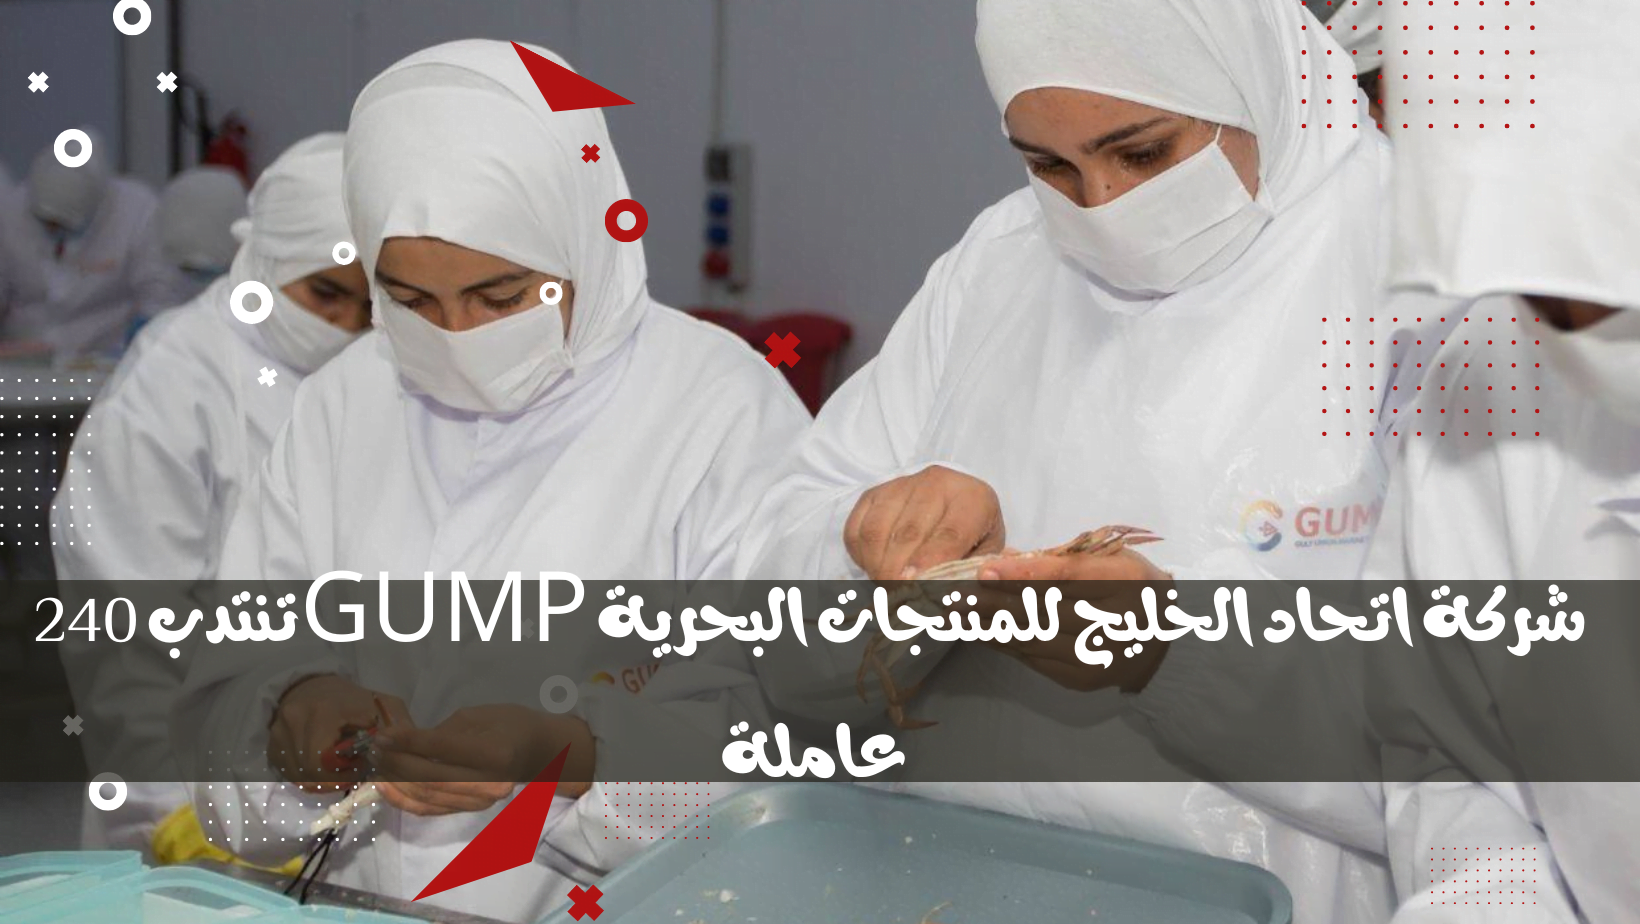 شركة اتحاد الخليج للمنتجات البحرية GUMP تنتدب 240 عاملة